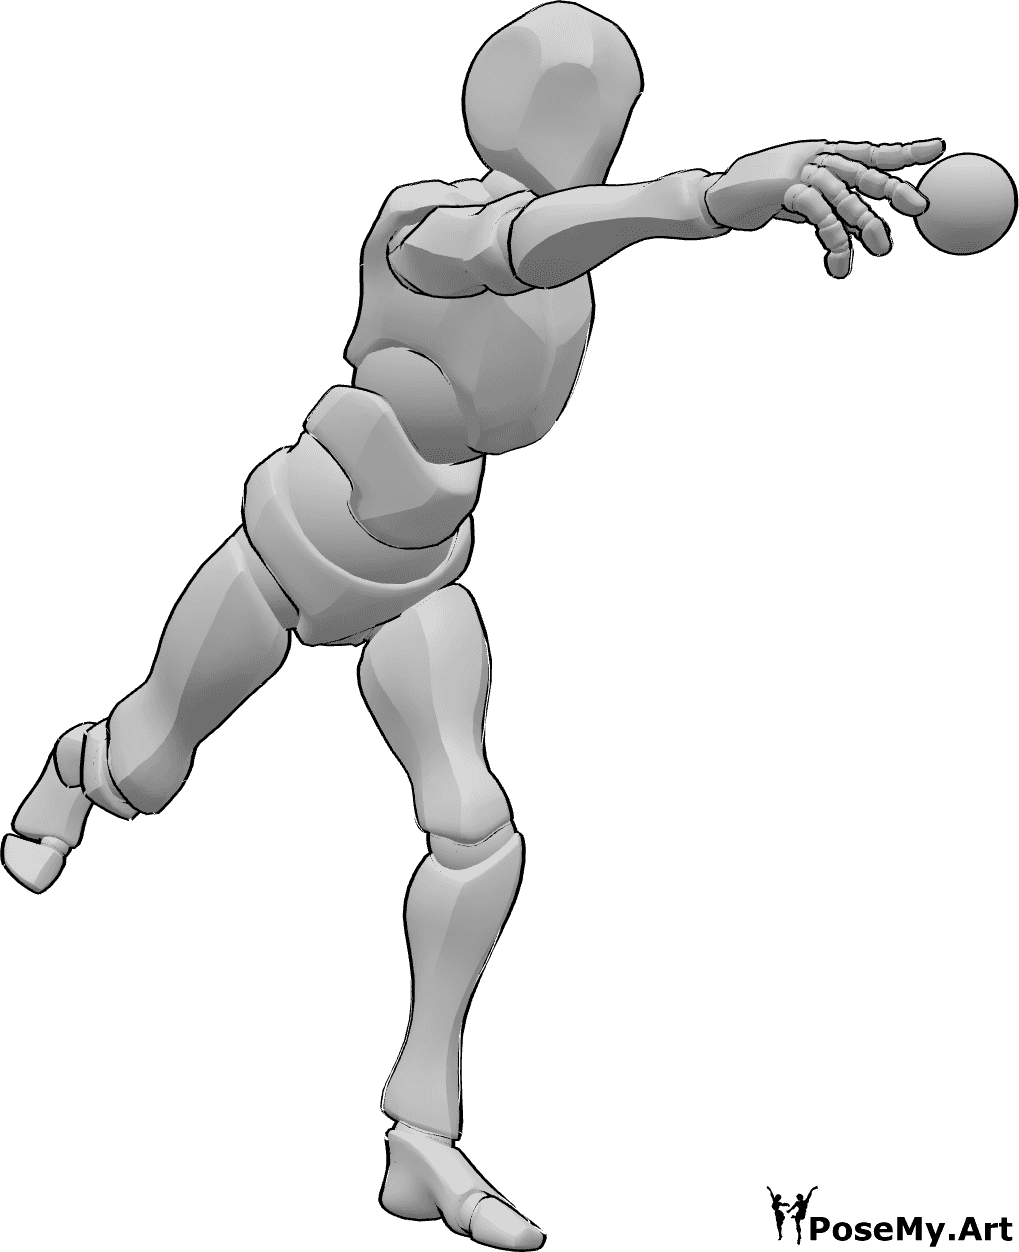 Référence des poses- Pose de lancer de balle de baseball - Le joueur de baseball se tient debout et lance la balle avec sa main droite.